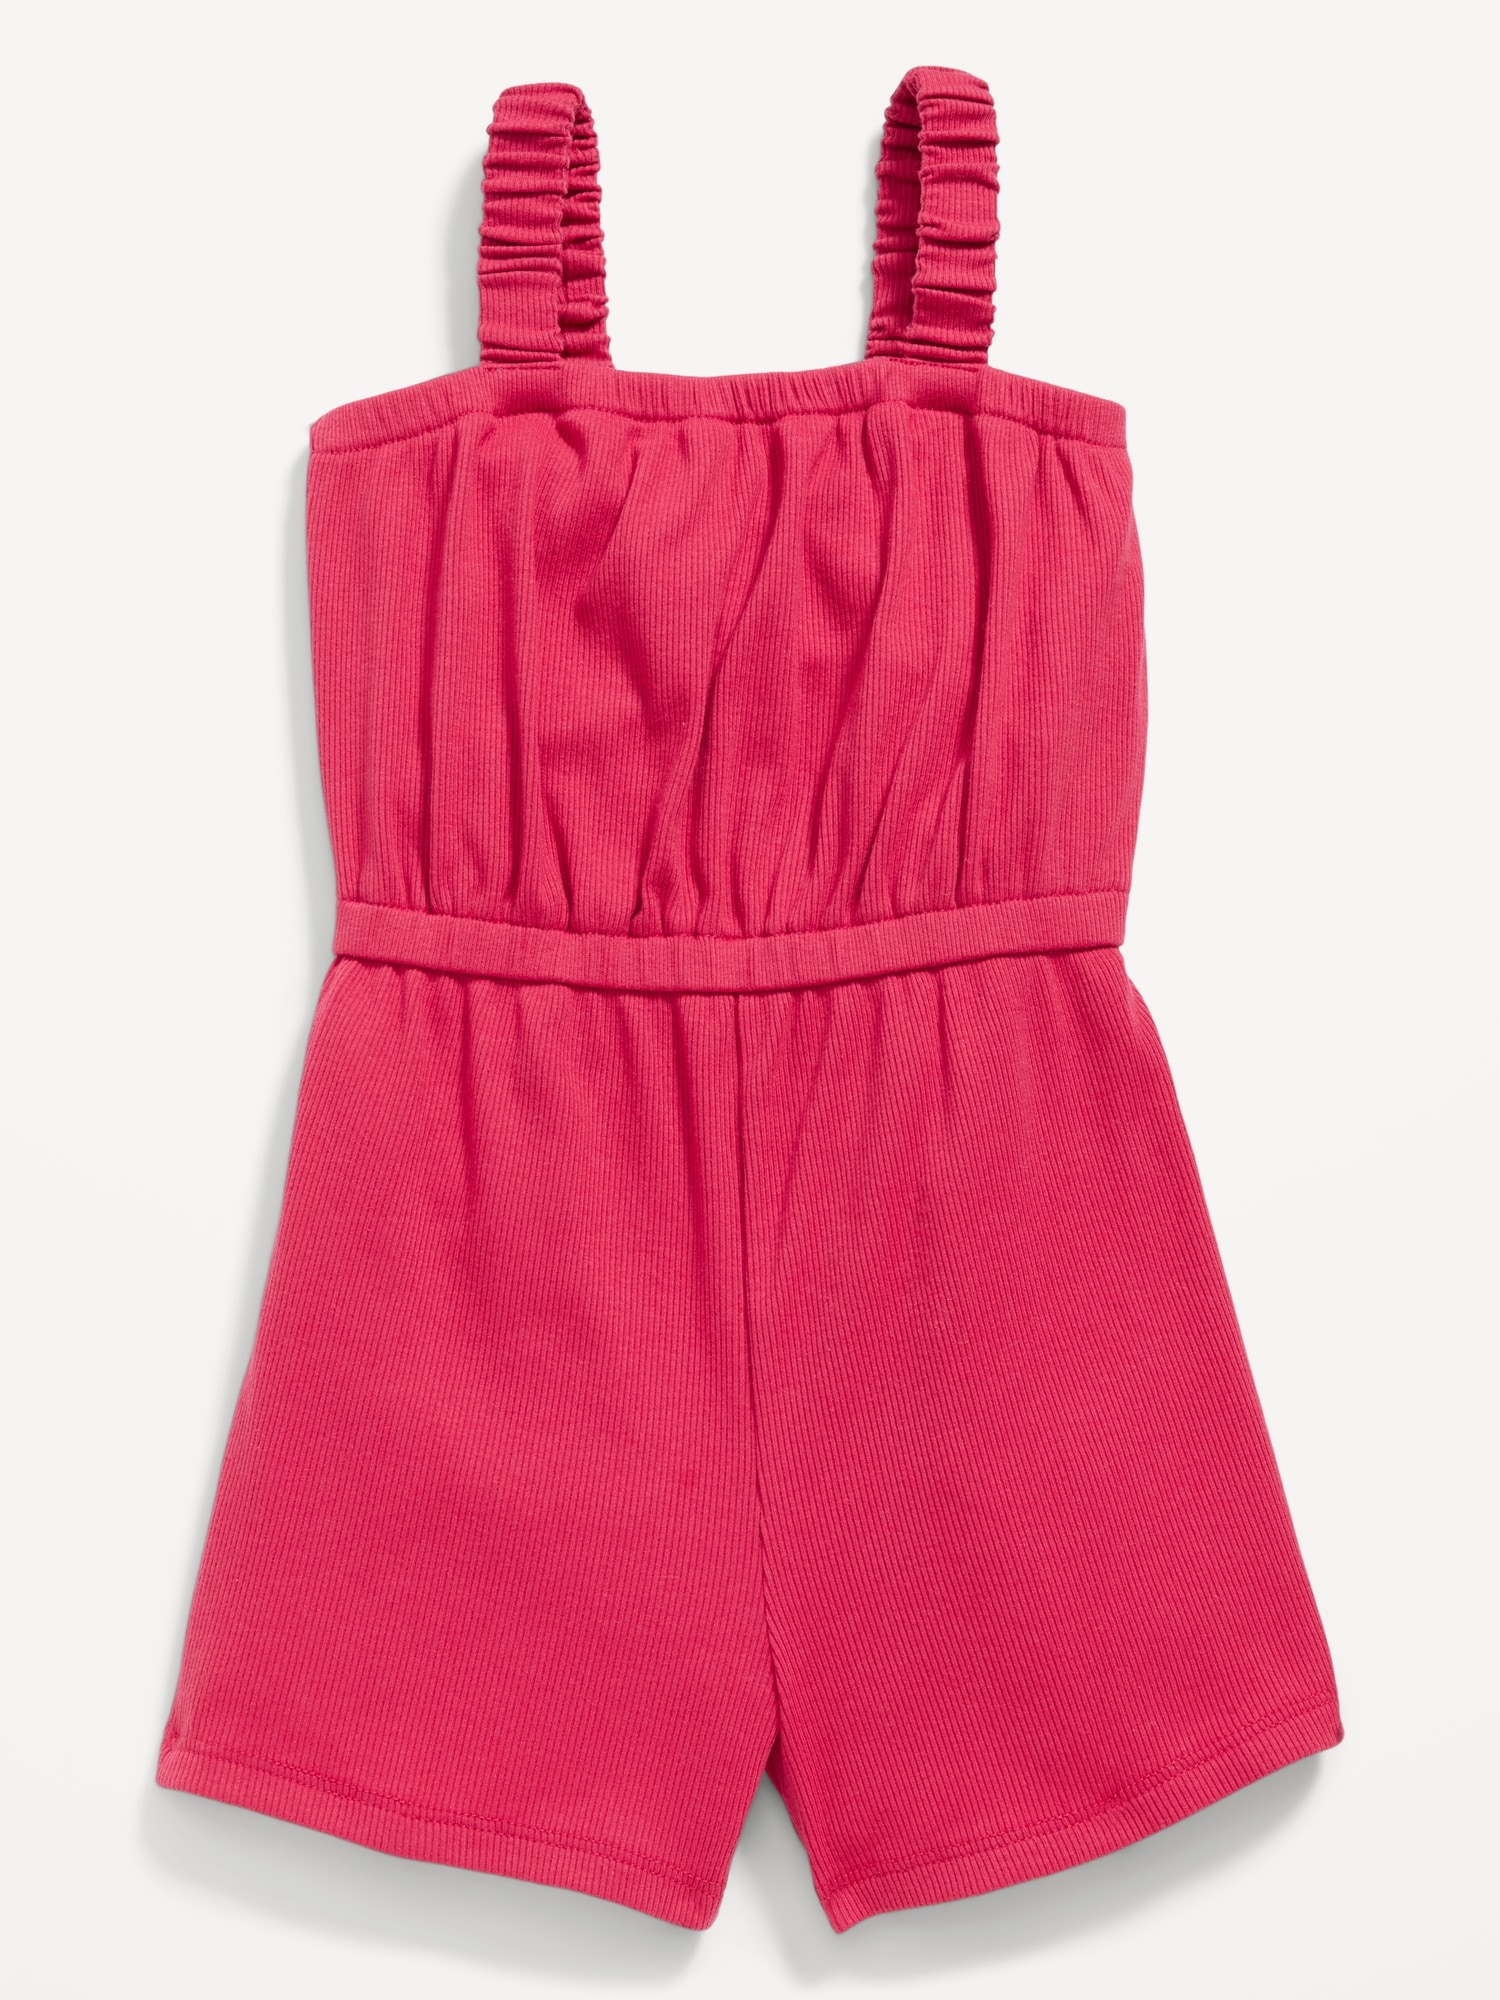 Old Navy Sleeveless Rib-Knit Romper for Toddler Girls red. 1